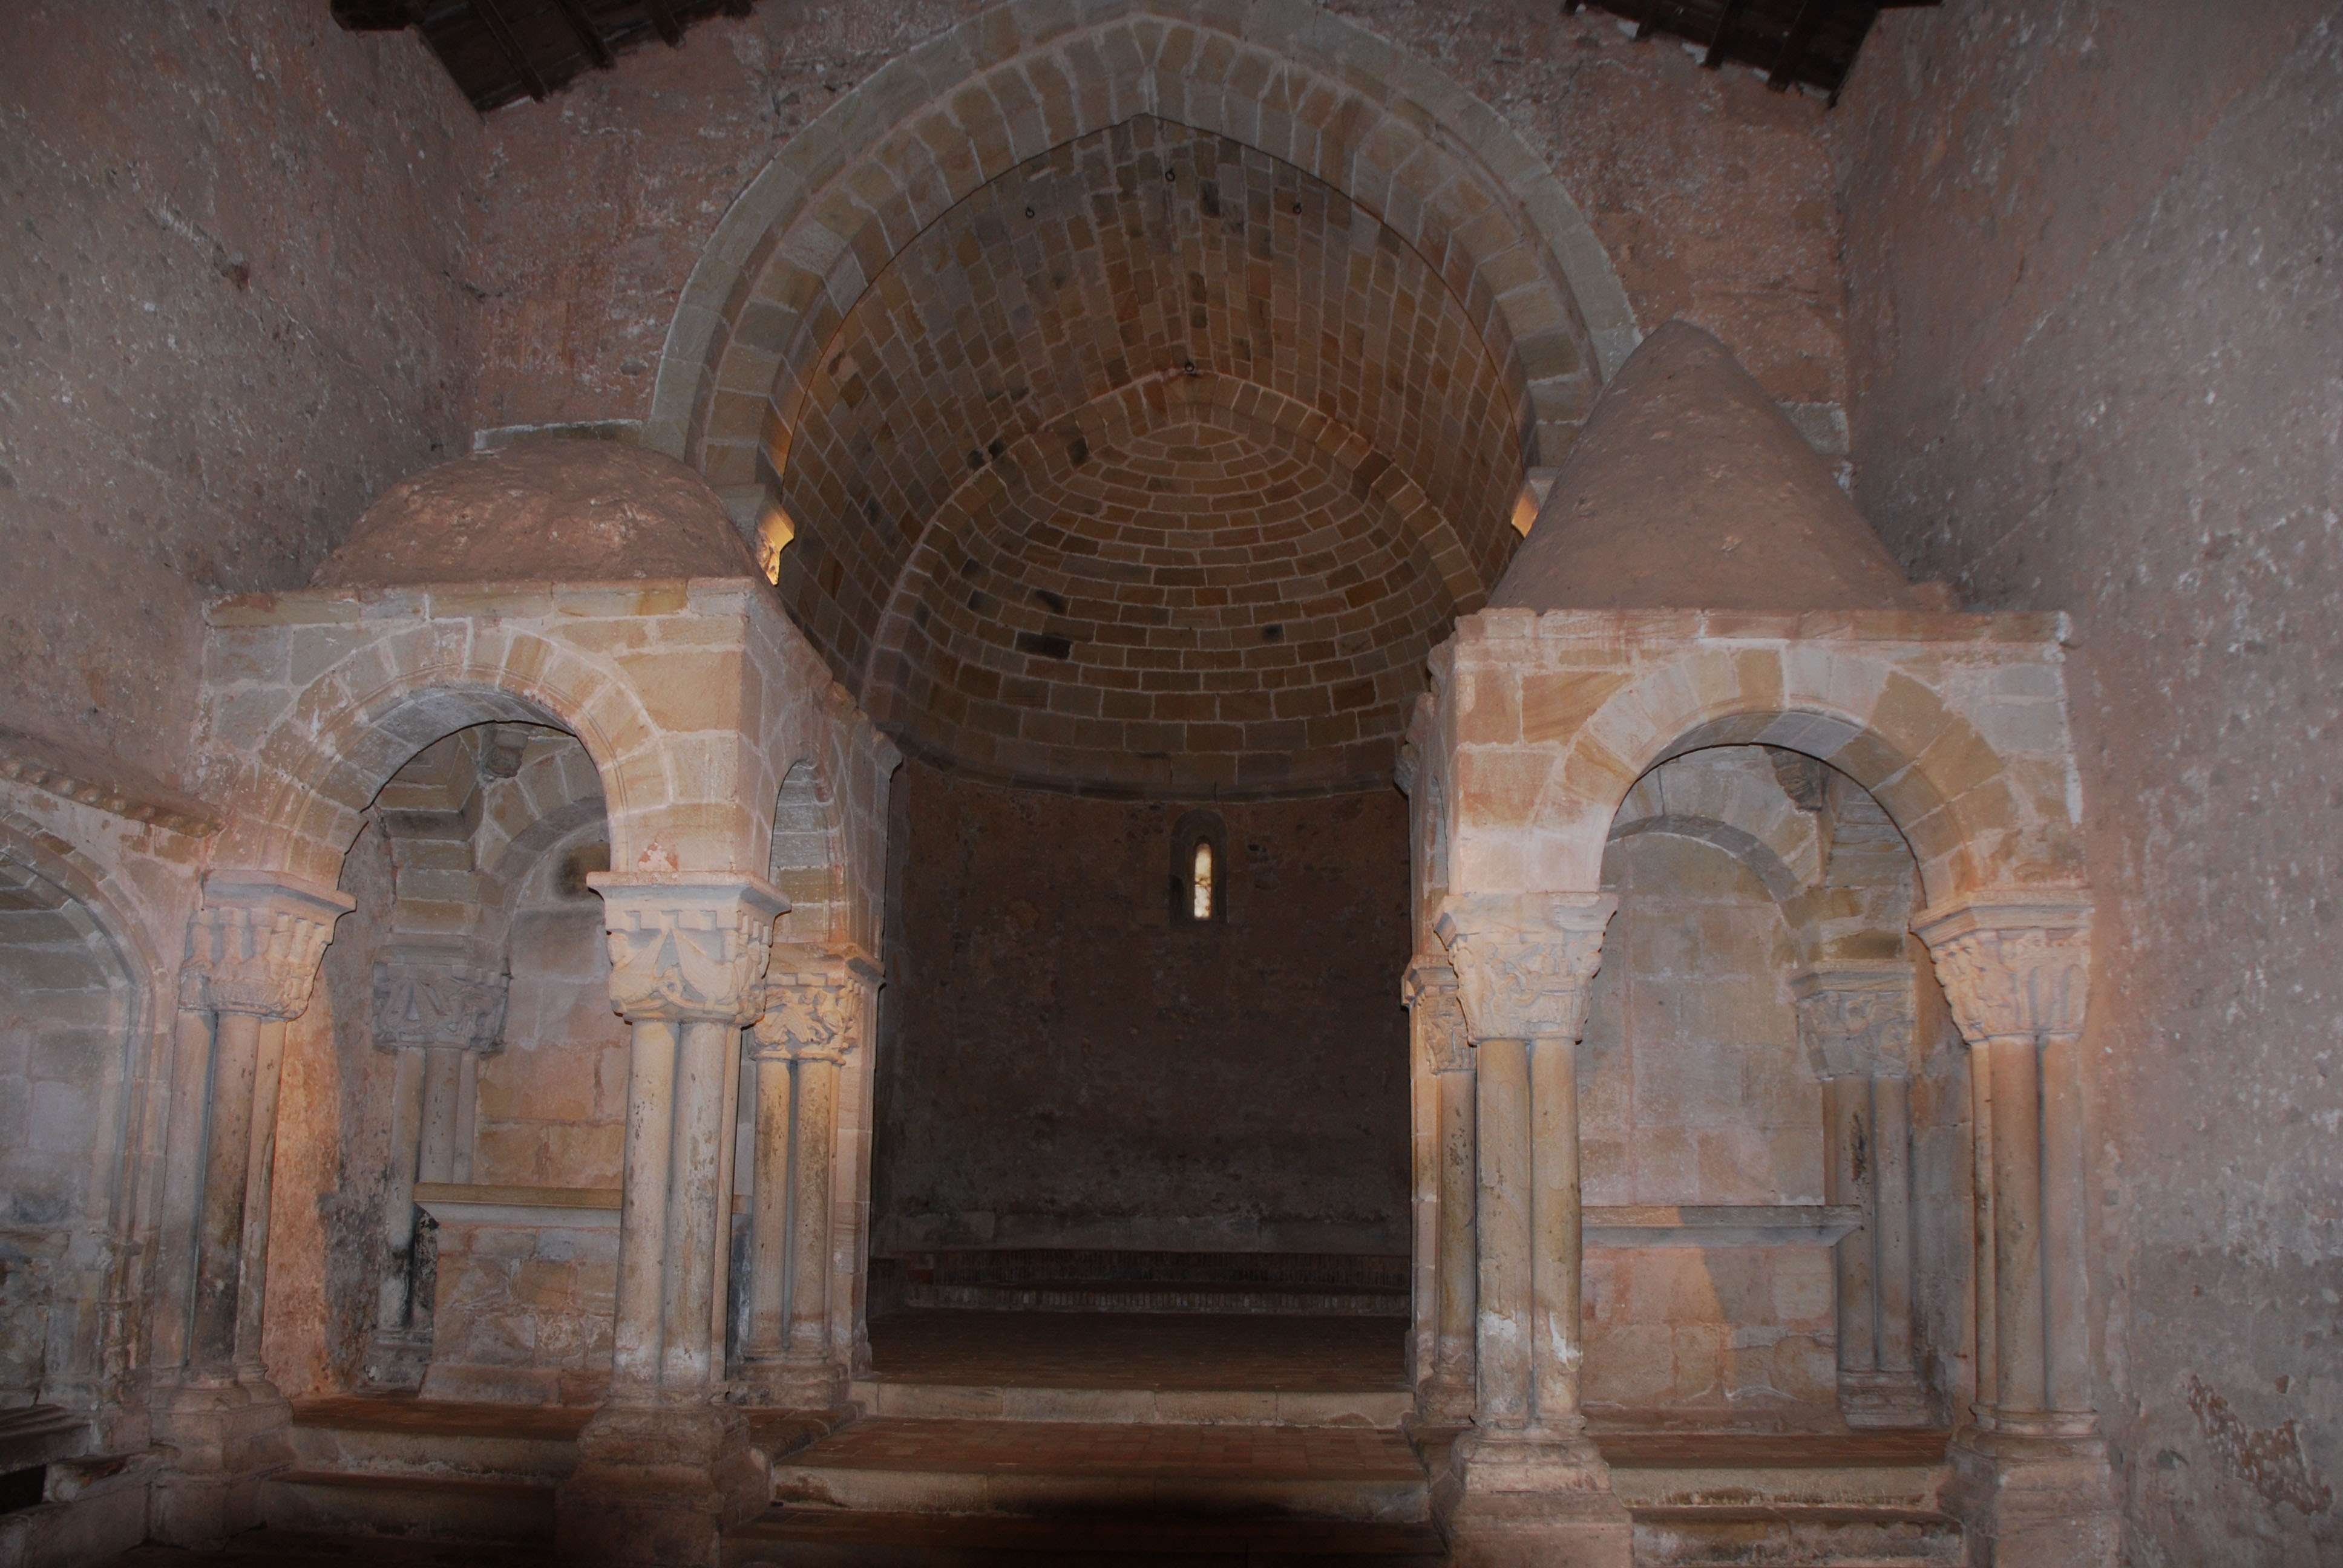 Monasterio de San Juan de Duero. Un enigma - Blogs of Spain - Monasterio de San Juan de Duero (1)